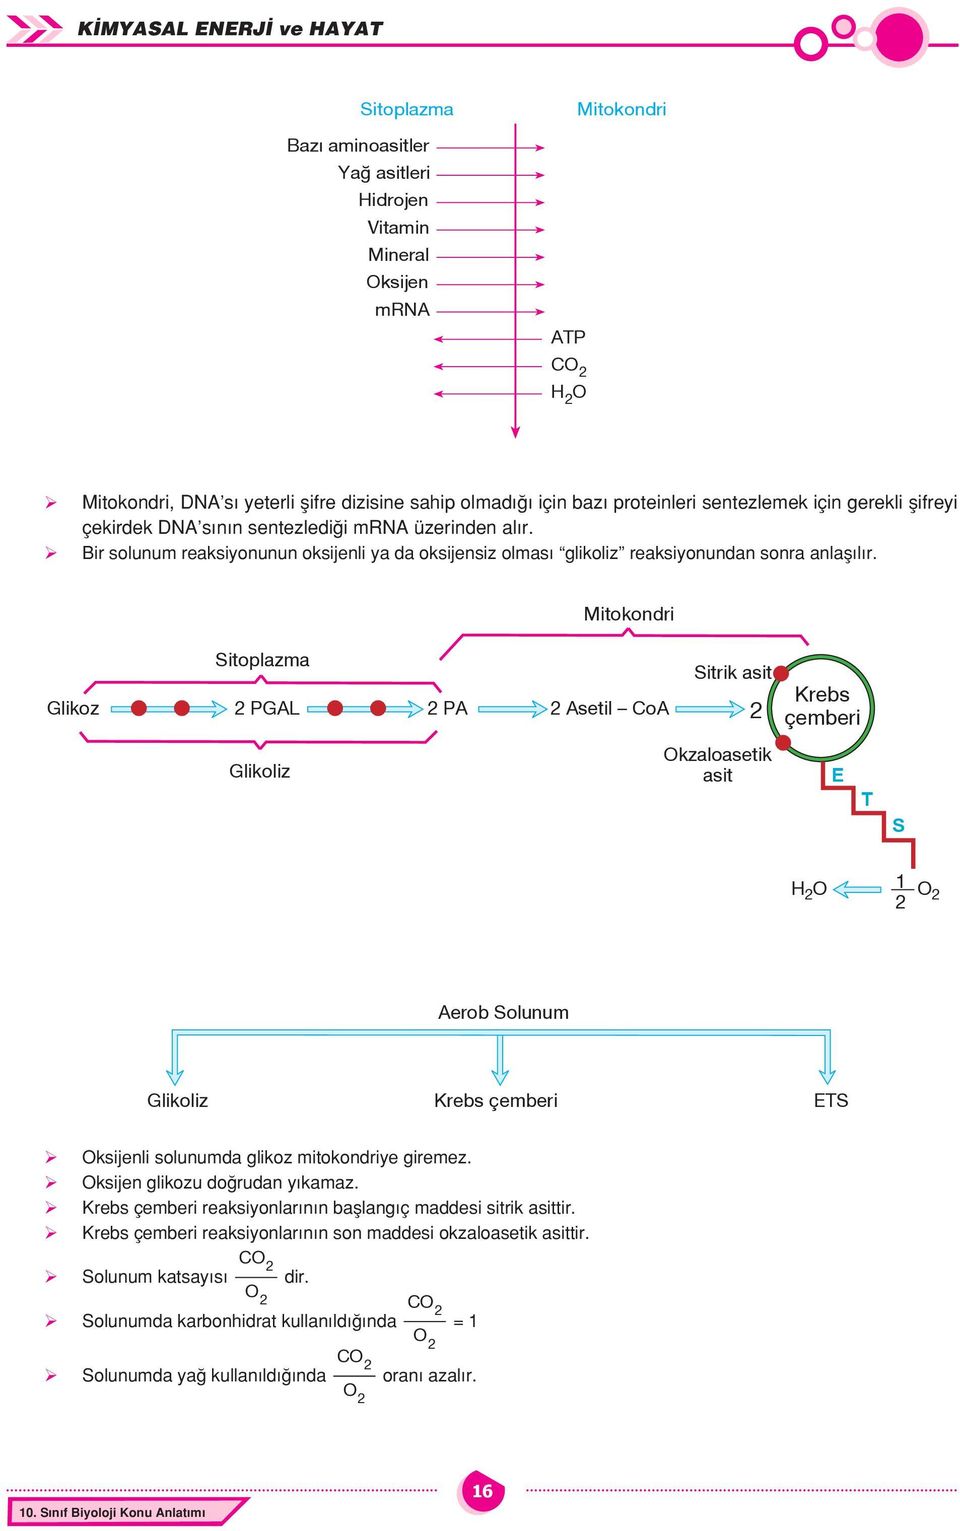 Mitokondri Sitoplazma Sitrik 2 PGAL 2 PA 2 Asetil CoA 2 Glikoliz Okzaloasetik Krebs çemberi E T S 2 O 2 Aerob Solunum Glikoliz Krebs çemberi ETS Oksijenli solunumda glikoz mitokondriye giremez.